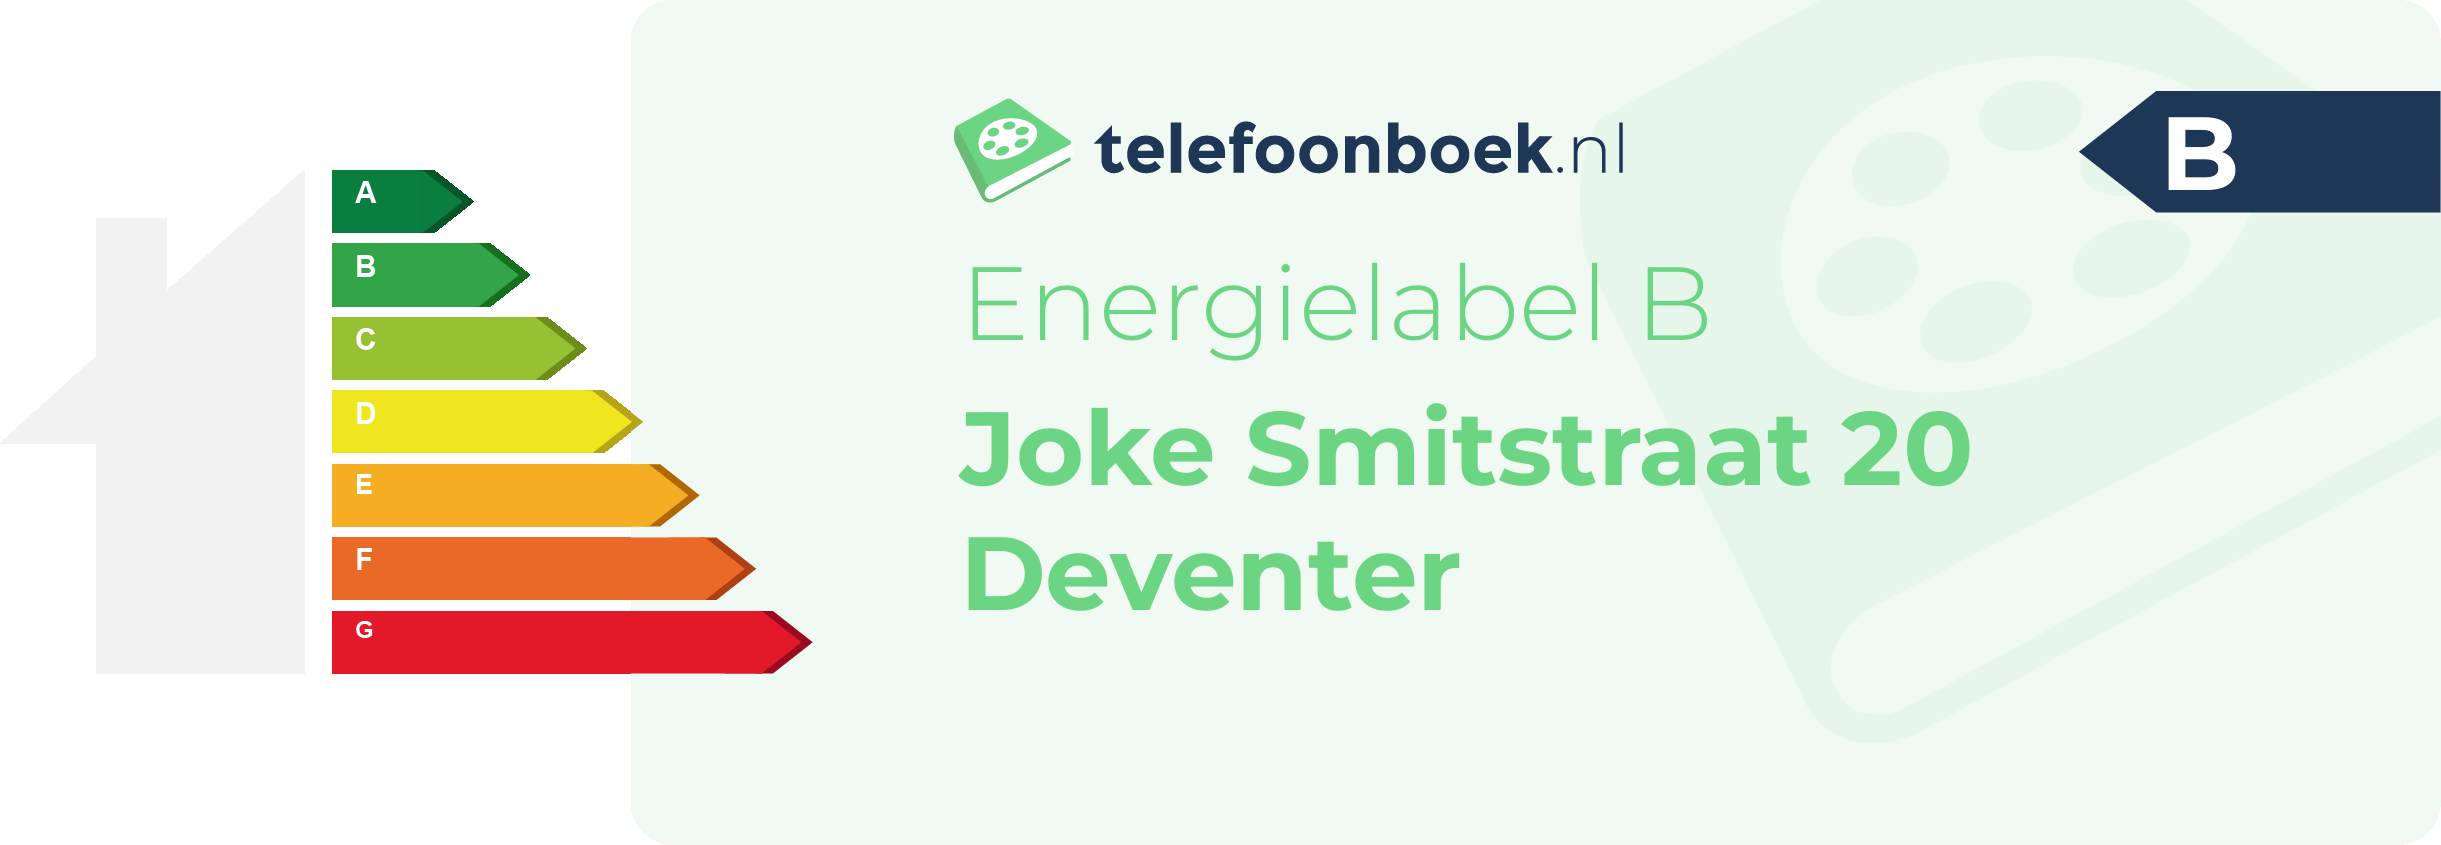 Energielabel Joke Smitstraat 20 Deventer